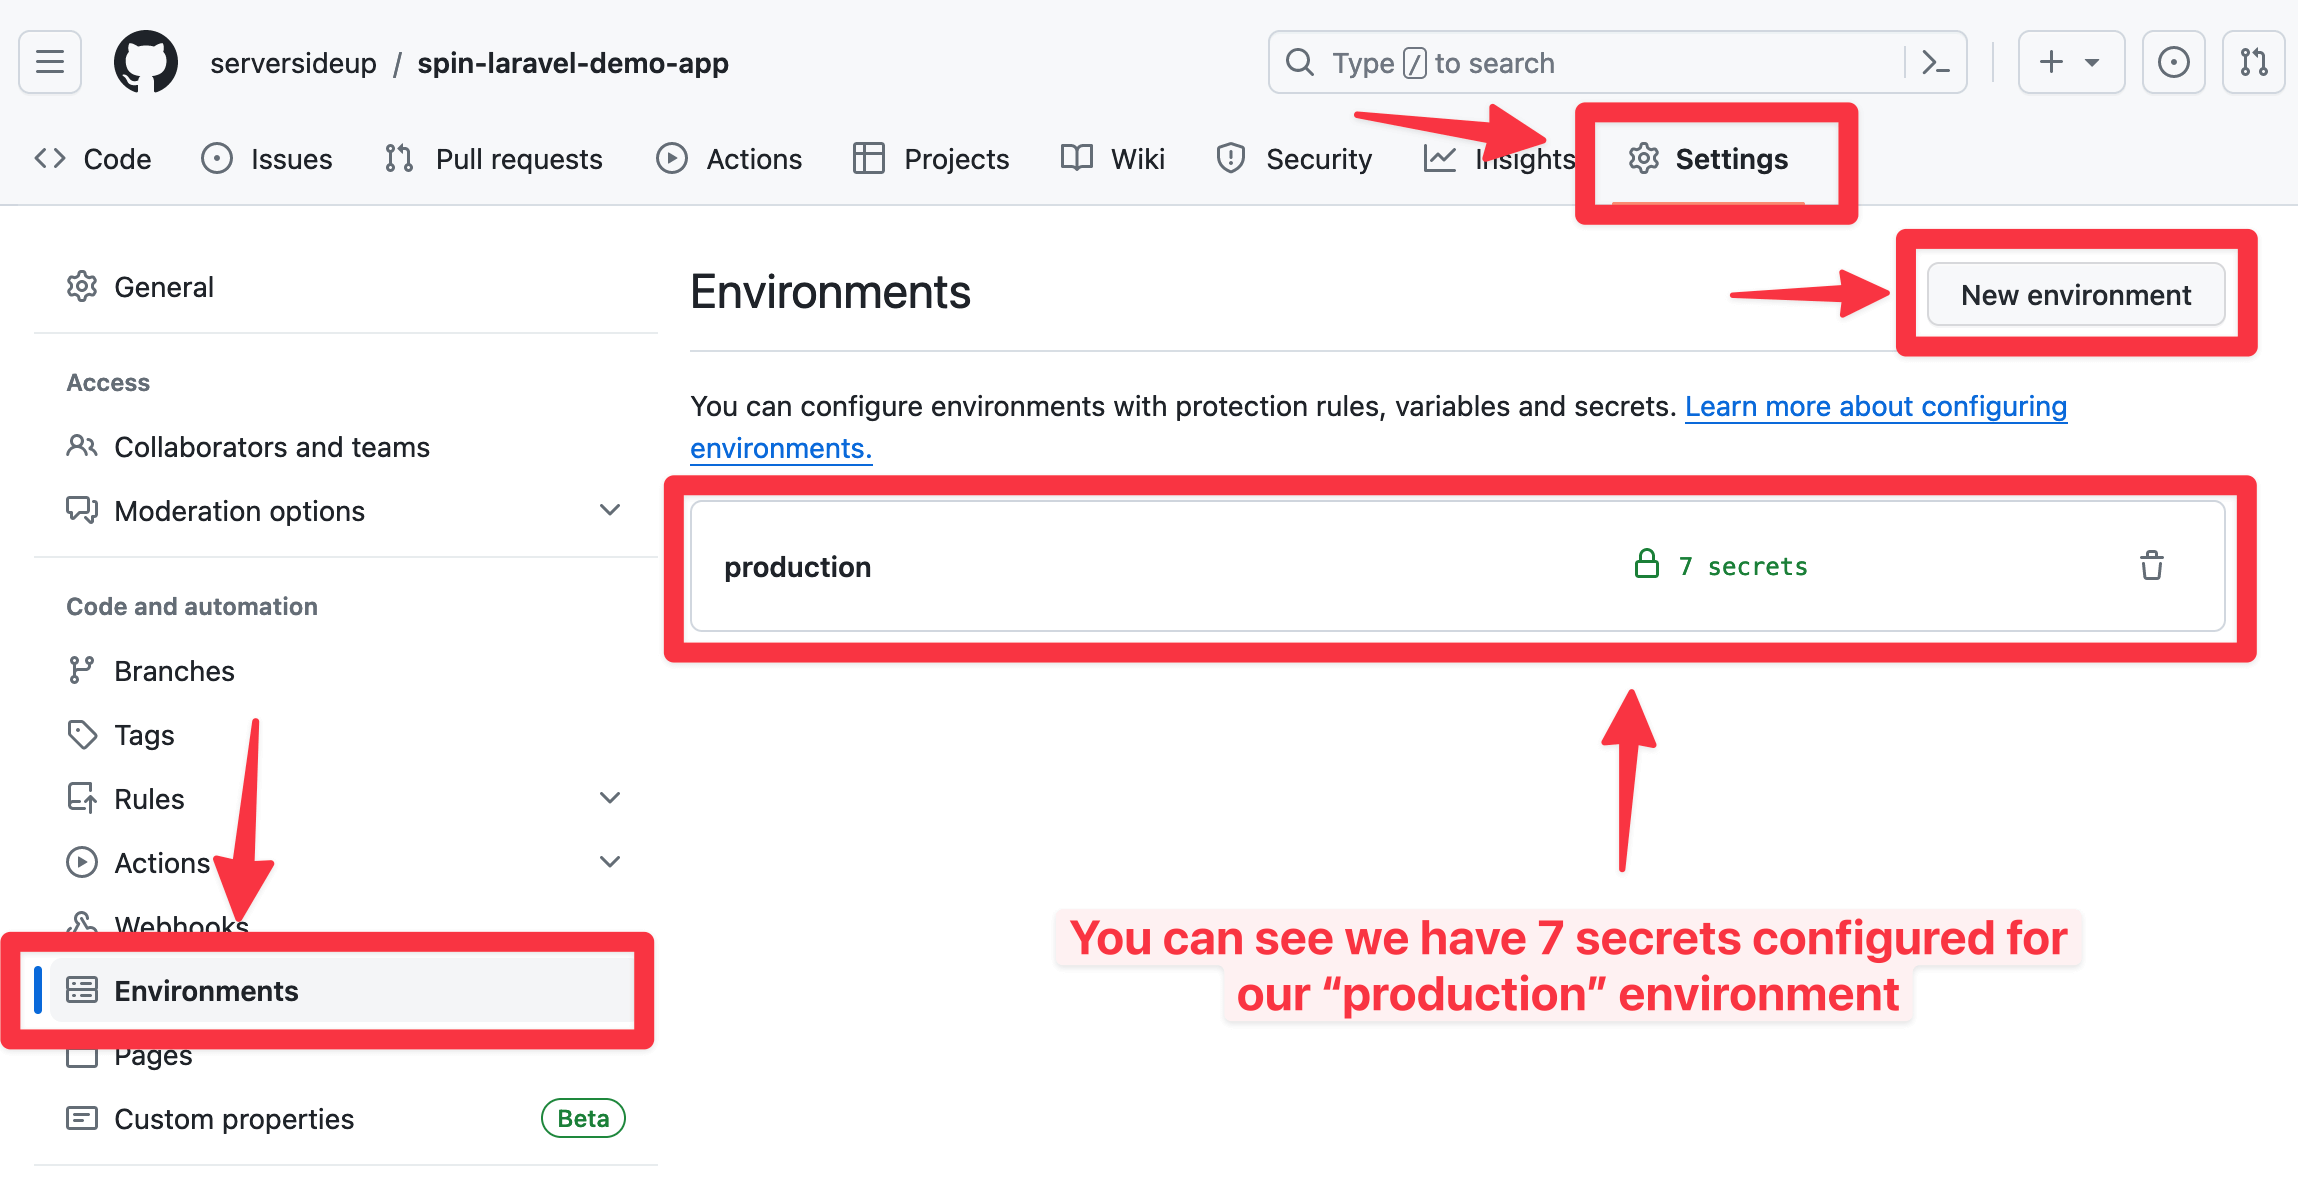 GitHub Actions Secrets